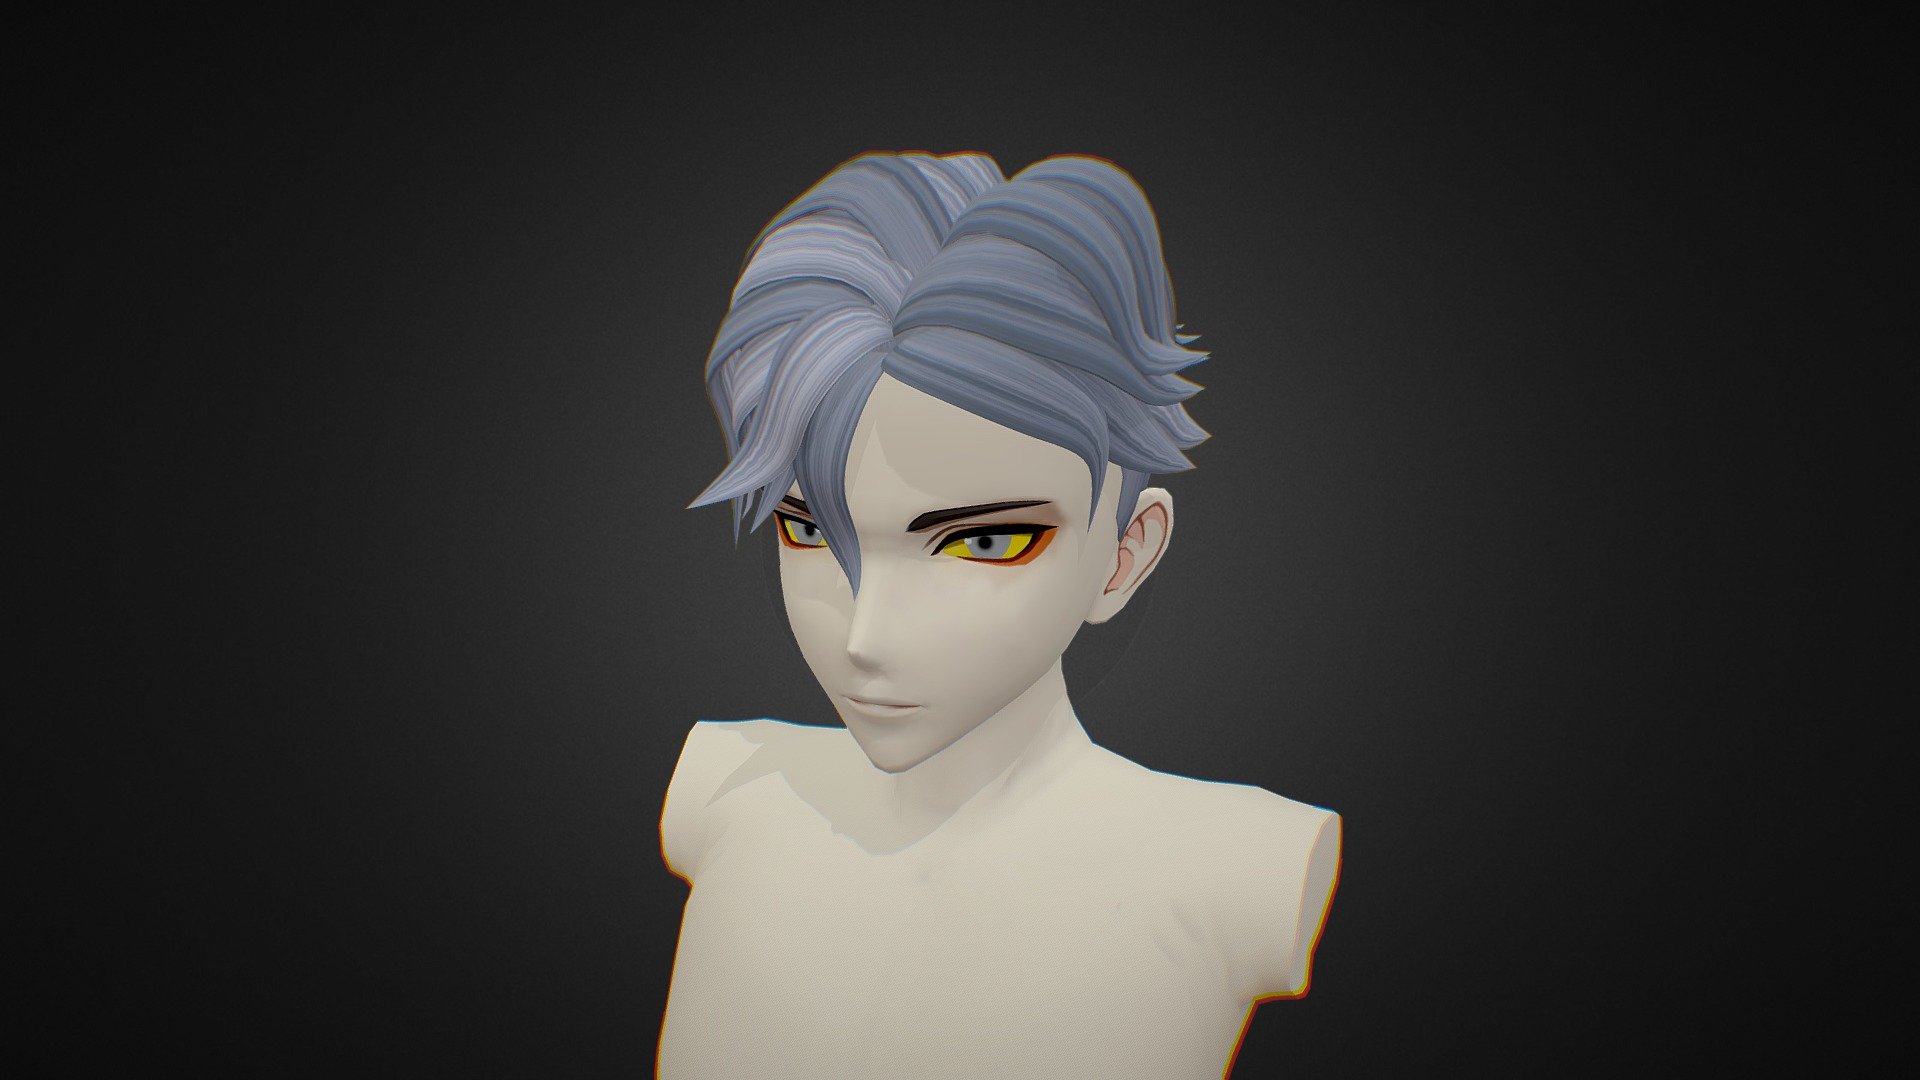 Anime Hair 5 - Ngchipv - 3D model by Ngchipv 3d model